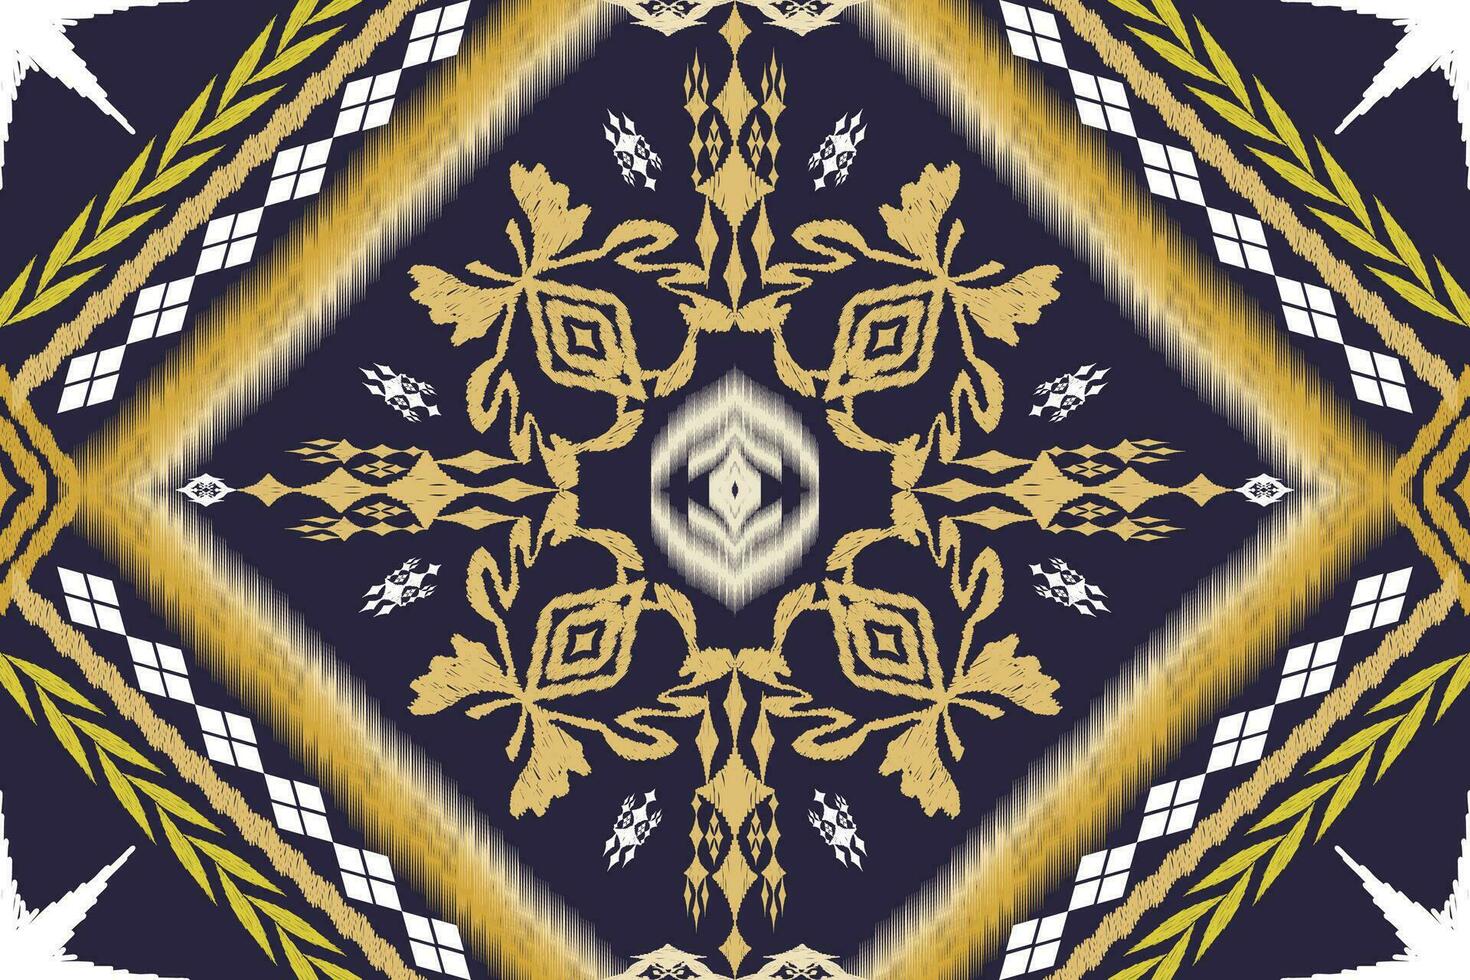 ikat étnico asteca bordado estilo.figura geométrico oriental tradicional arte padrão.design para ikat plano de fundo,papel de parede,moda,vestuário,embrulho,tecido,elemento,sarong,gráfico ilustração. vetor